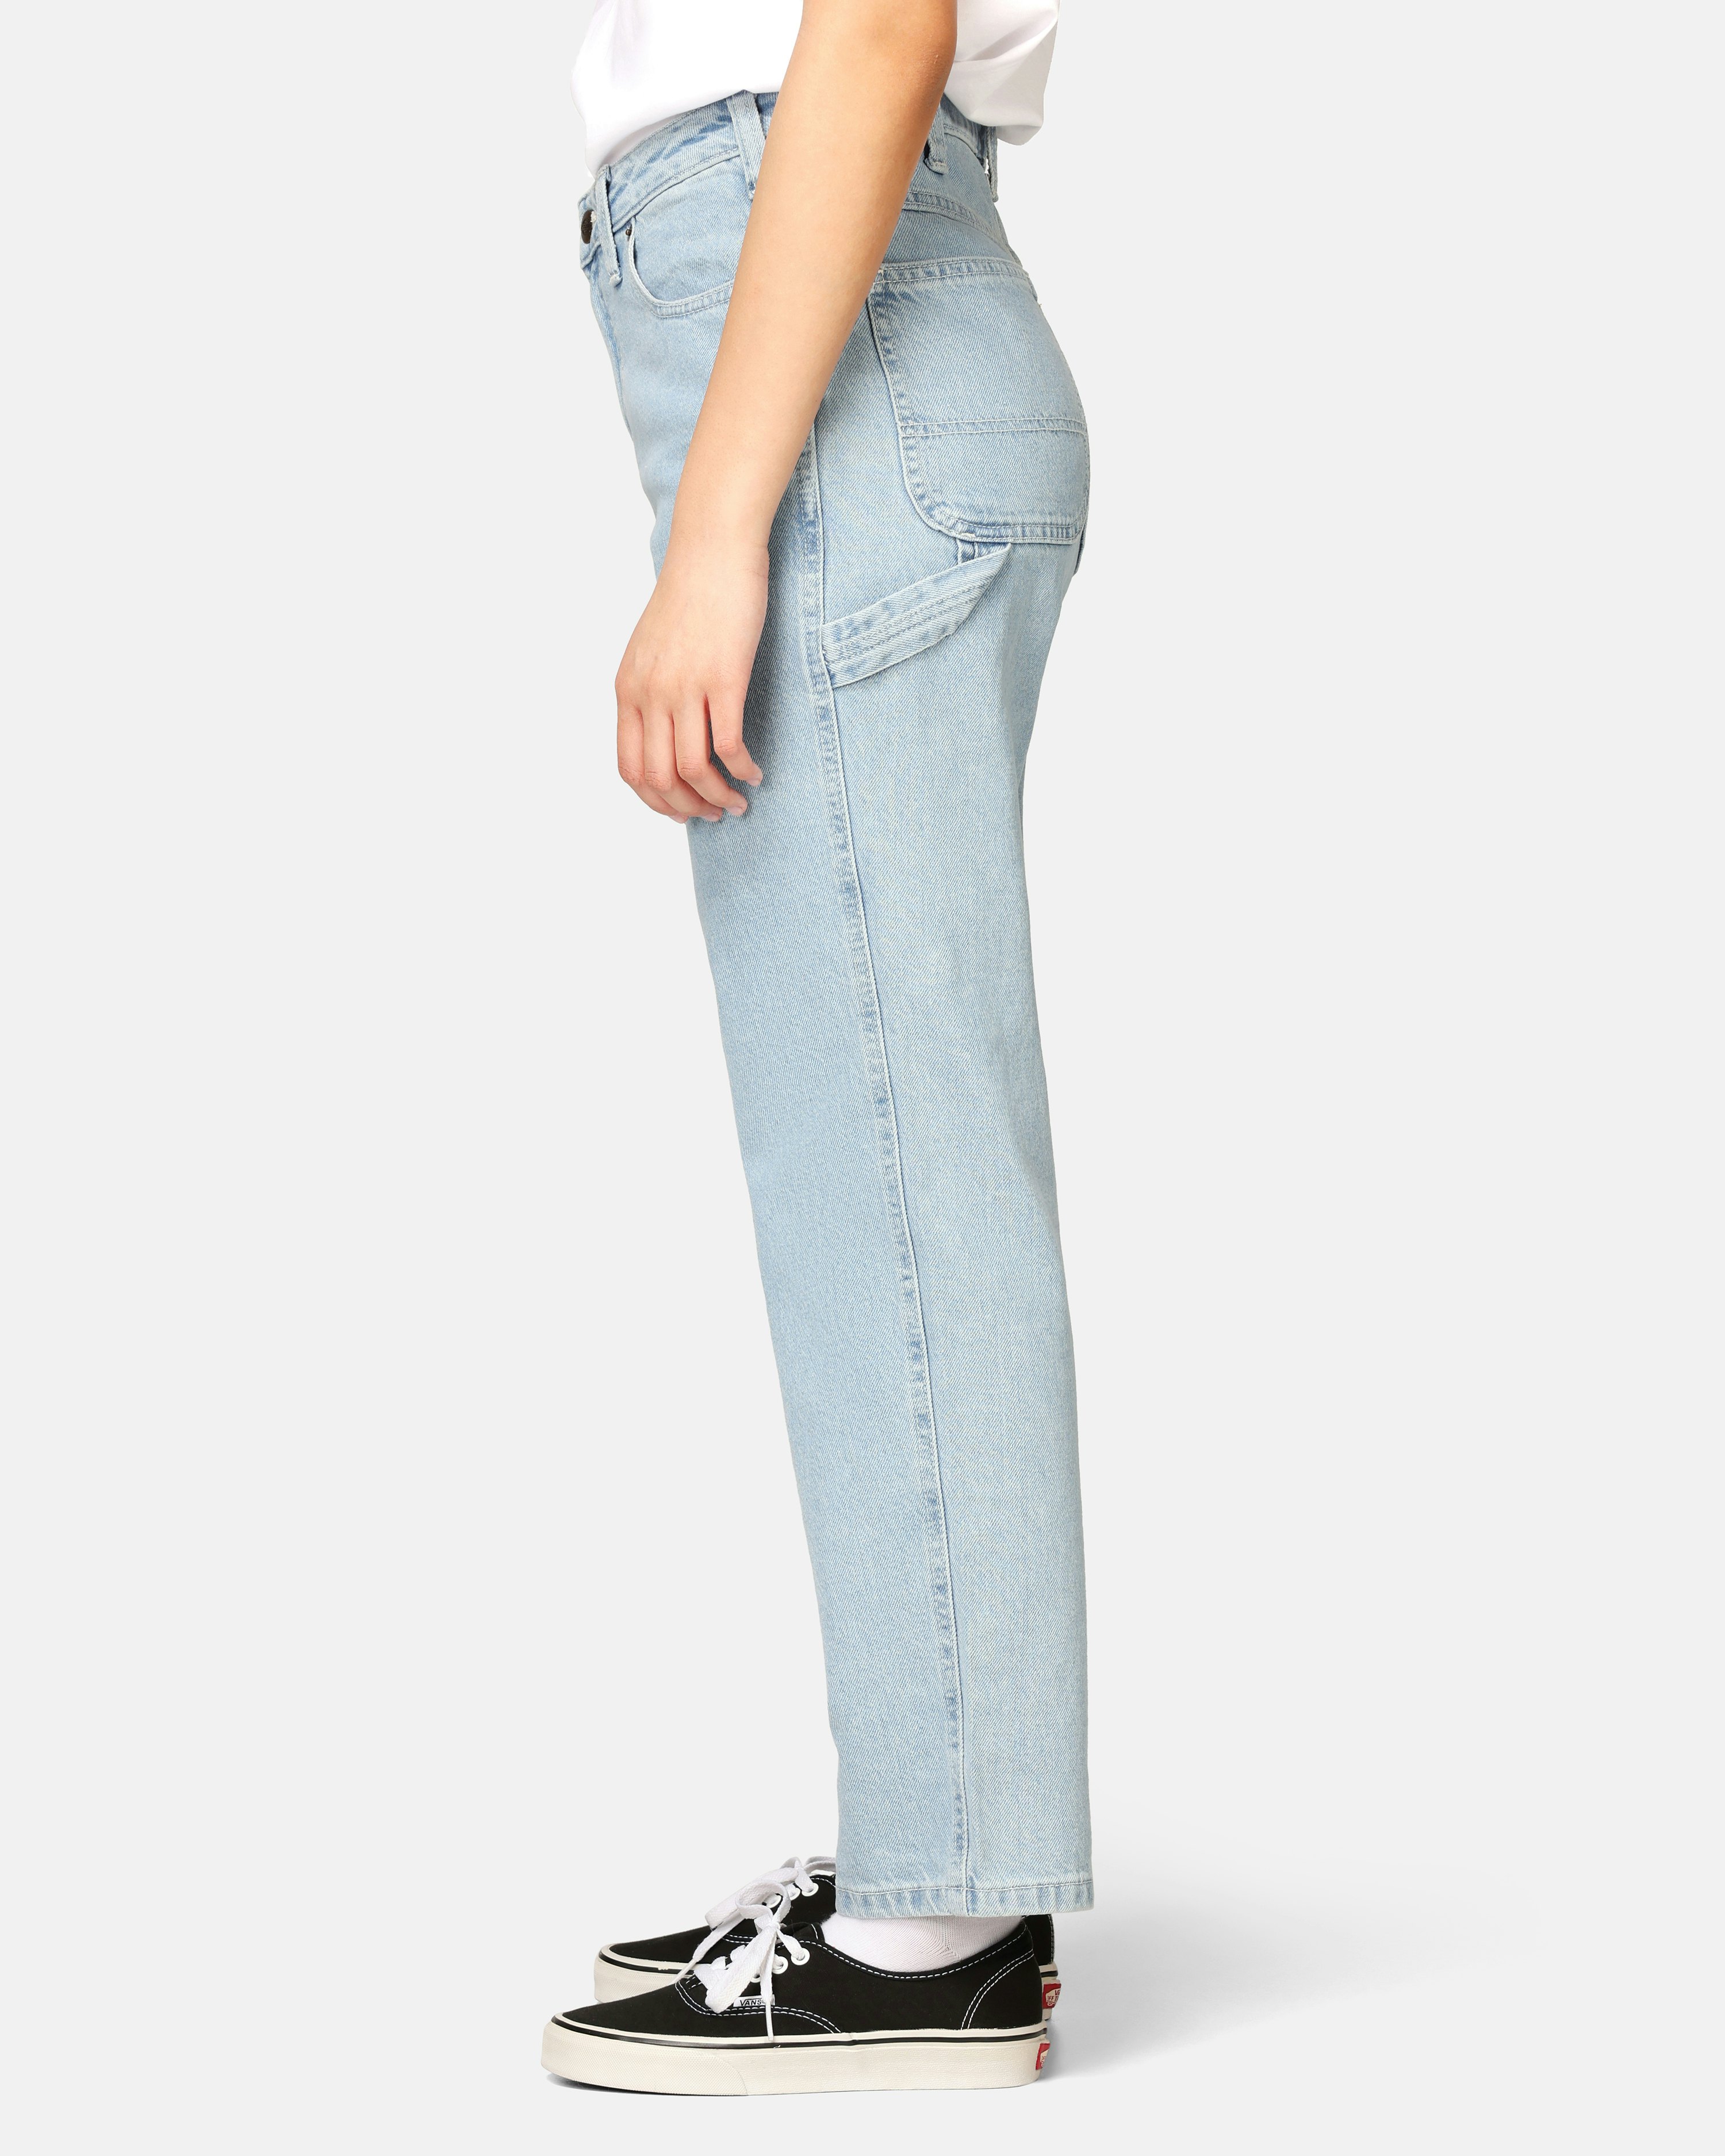 Dickies Ellendale Denim - Jeans Women's, Buy online